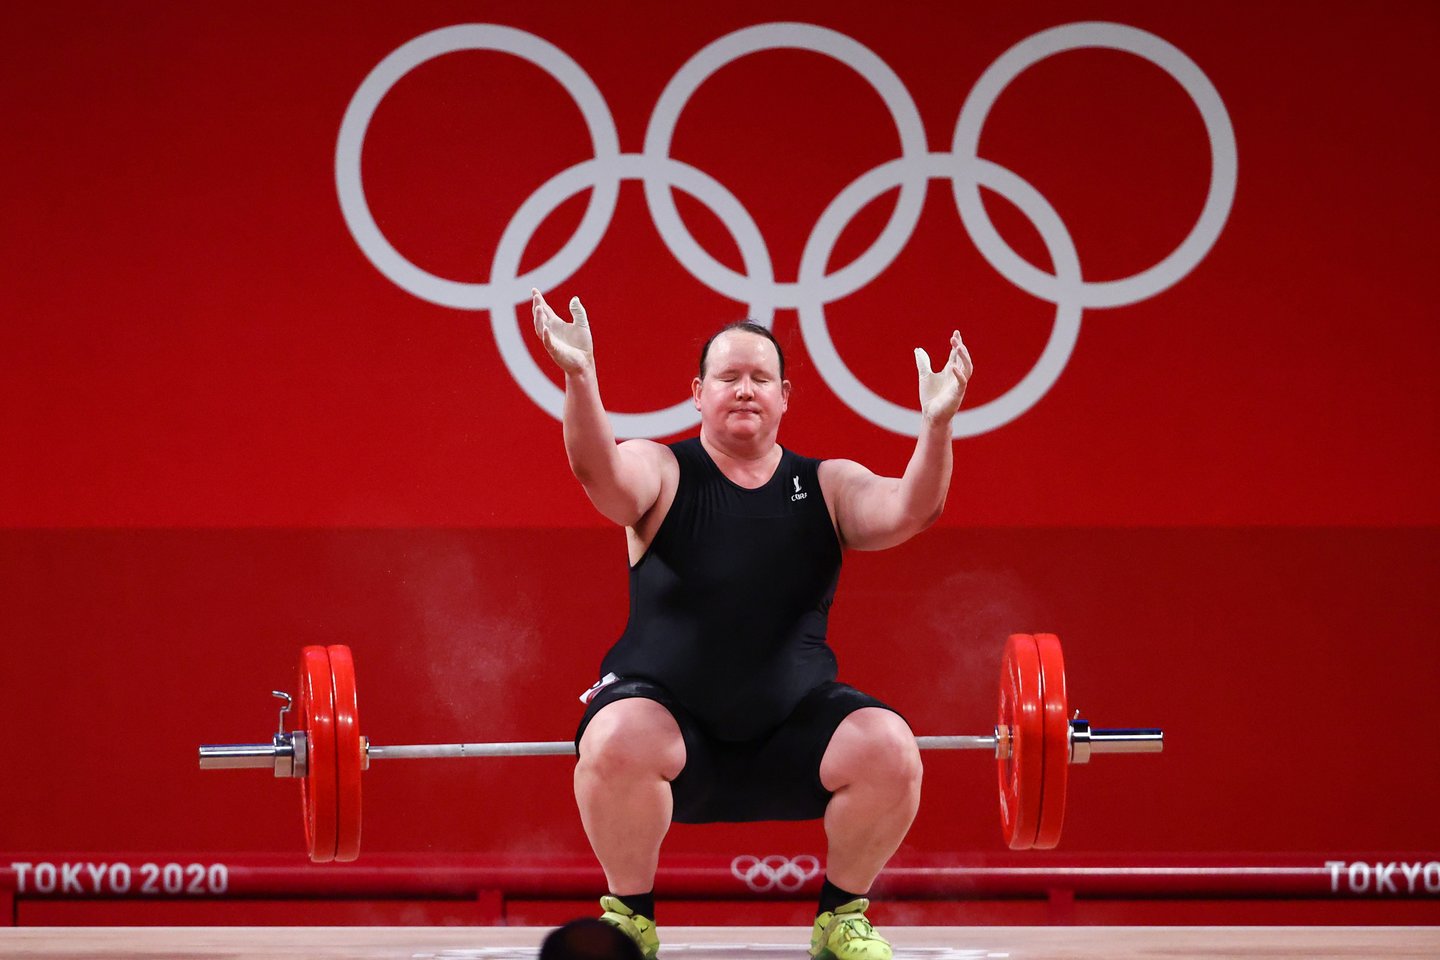  Pirmoji translytė olimpietė Tokijuje patyrė fiasko.<br> Reuters/Scanpix nuotr.